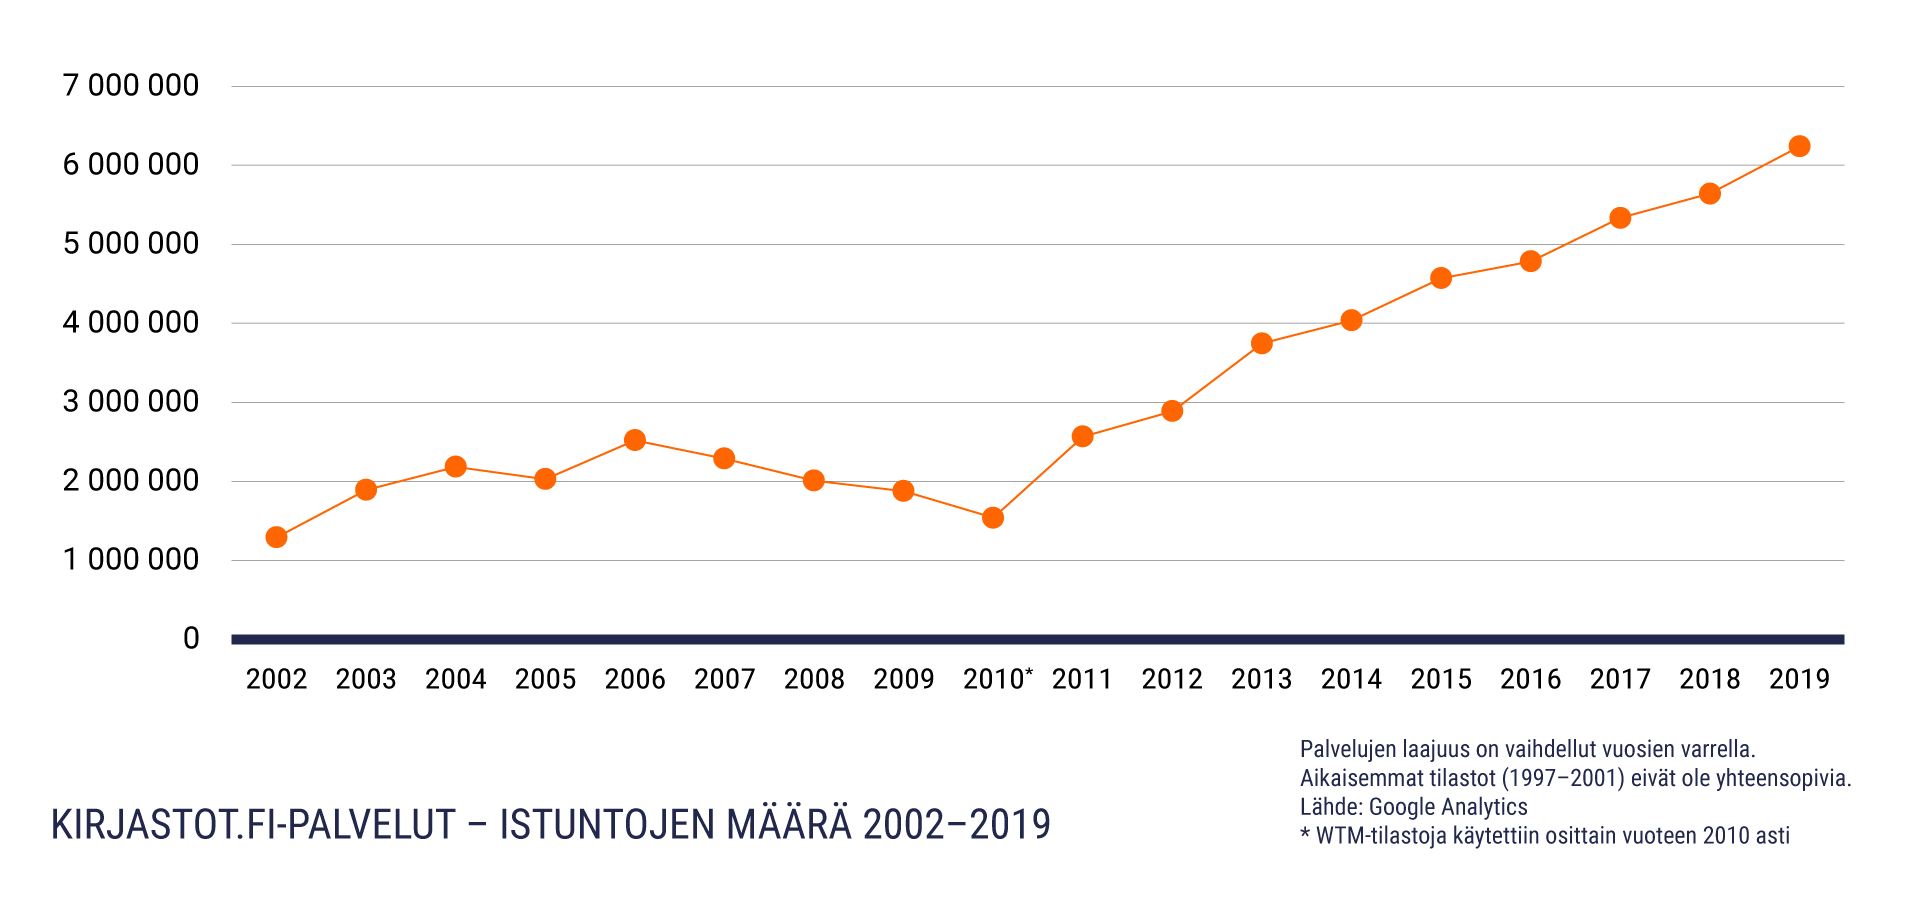 Istuntomäärien kasvu Kirjastot.fi.palveluissa vuosina 2002-2019. Nousu n. 1,2 miljoonasta 6,2 miljoonaan istuntoon.